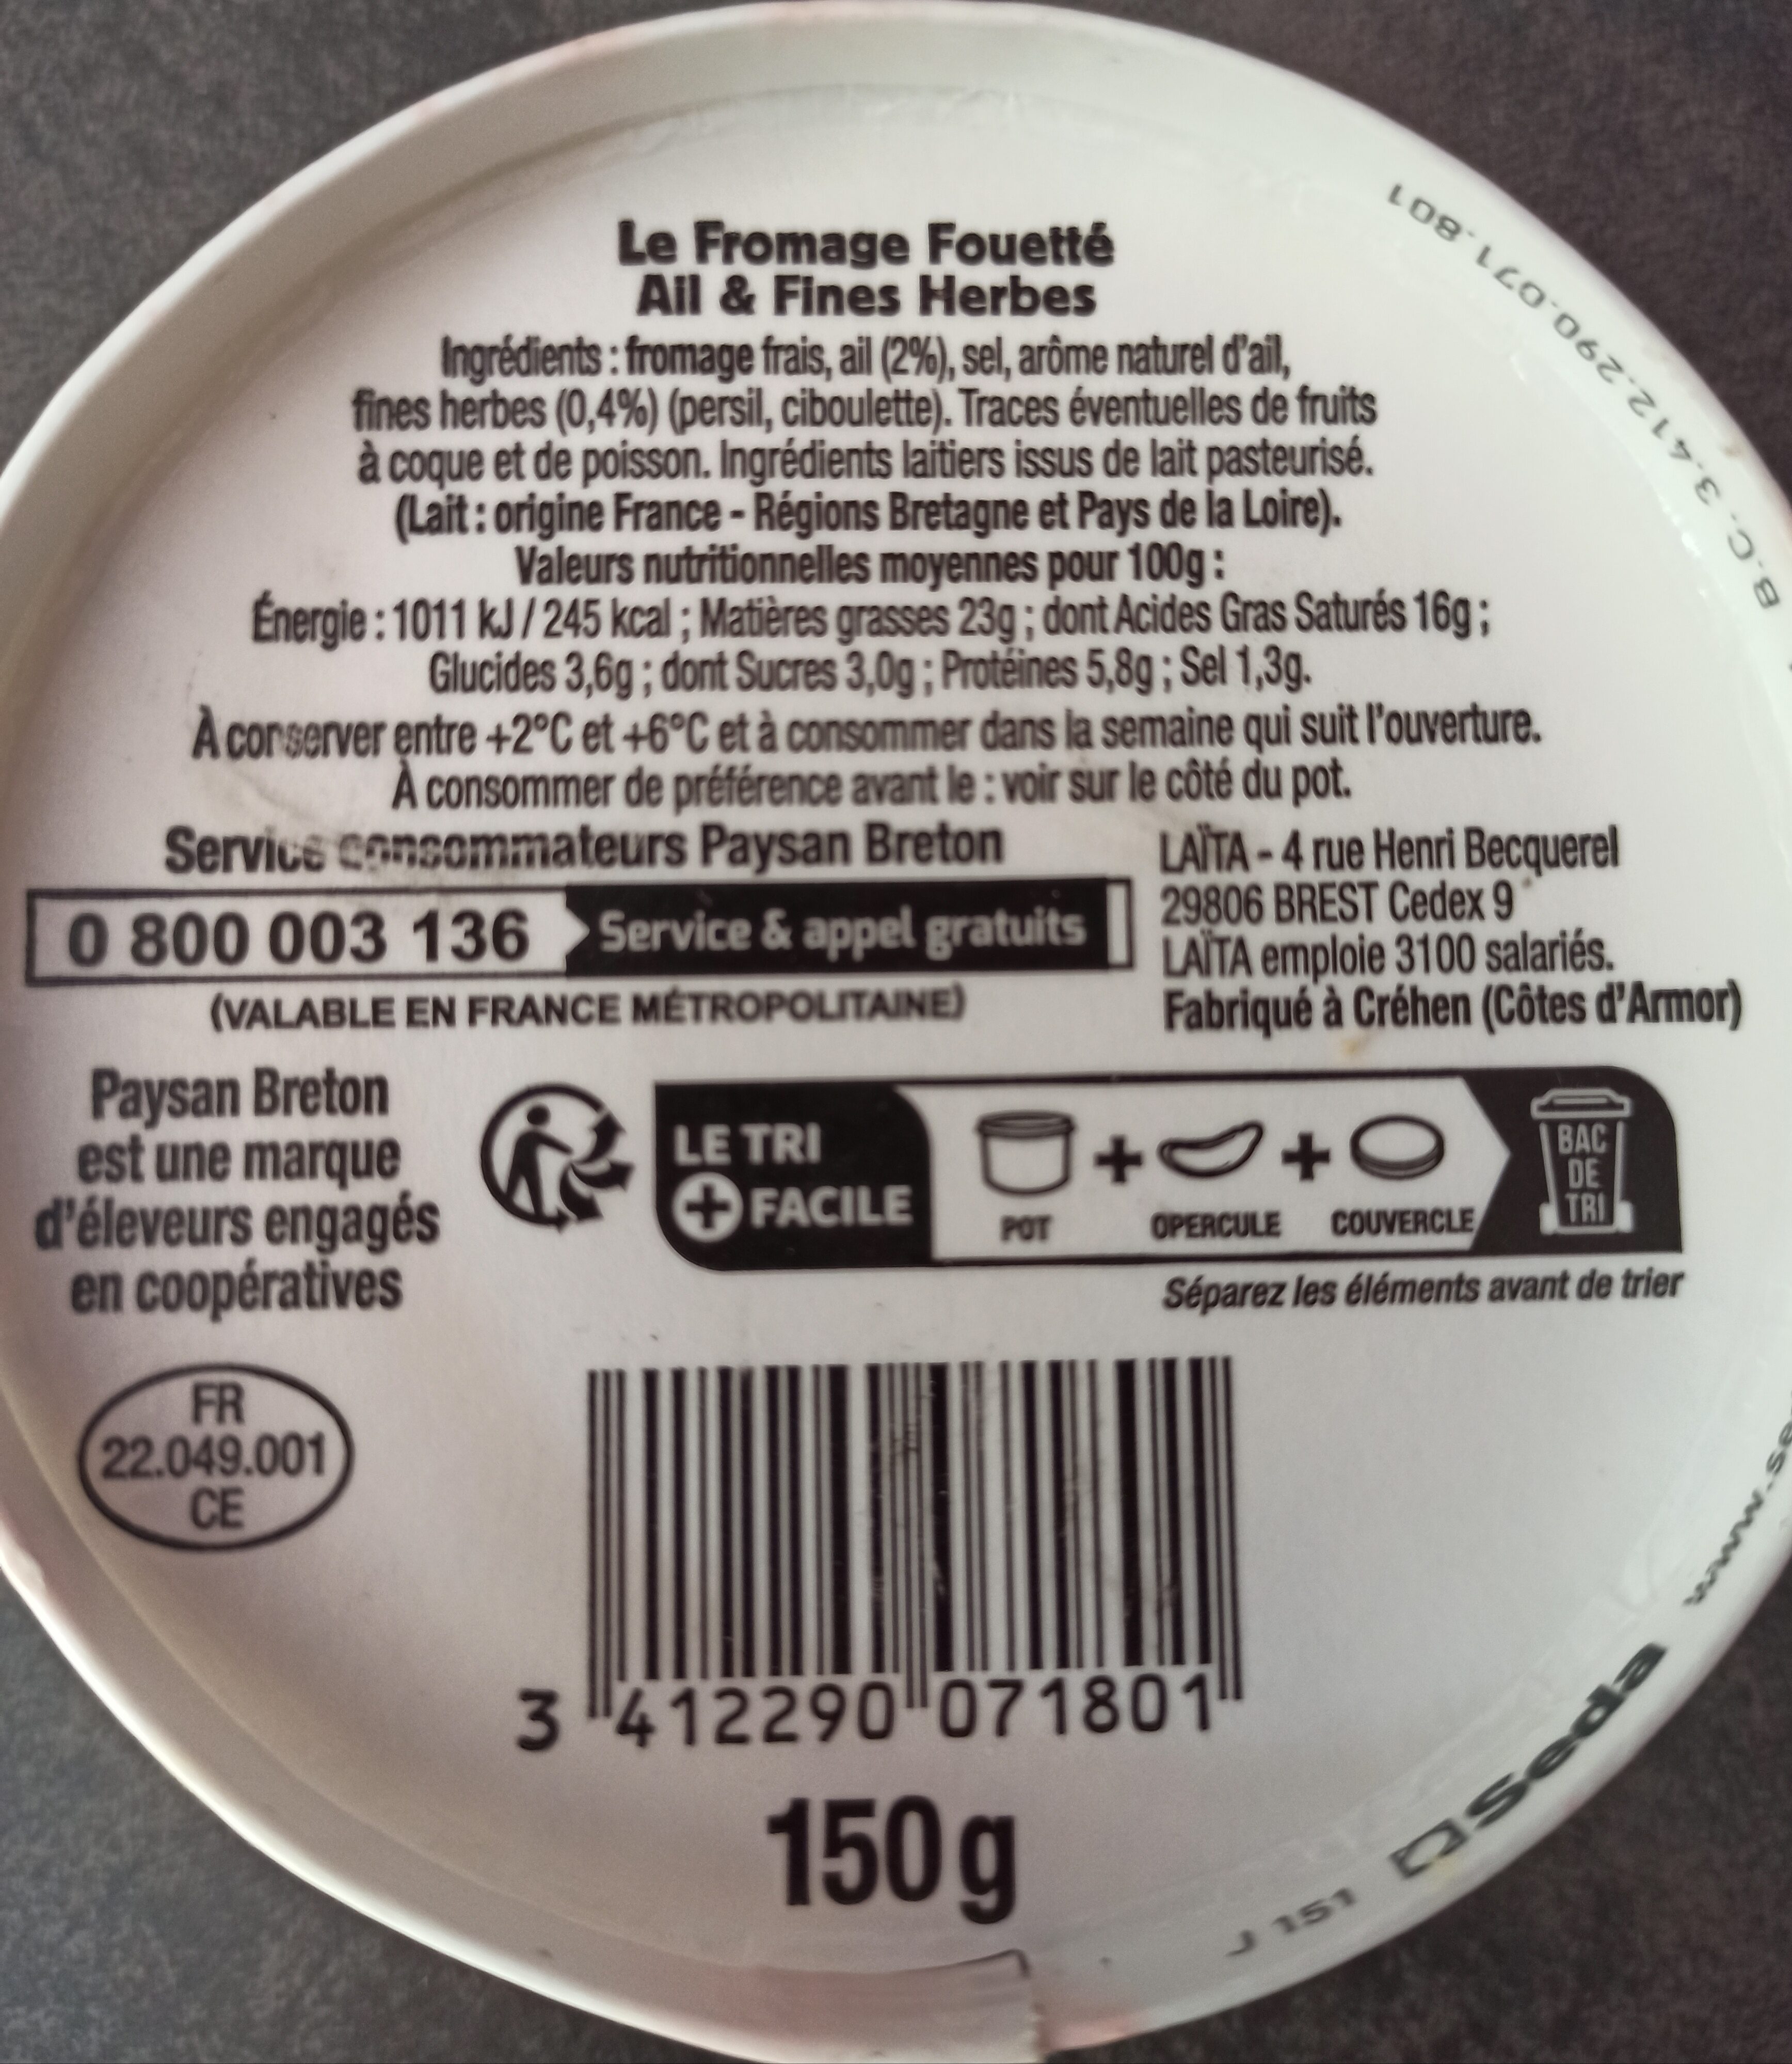 Paysan Breton - Le Fromage Fouetté Madame Loïk - Ail et fines herbes de nos régions françaises - Ingredients - fr